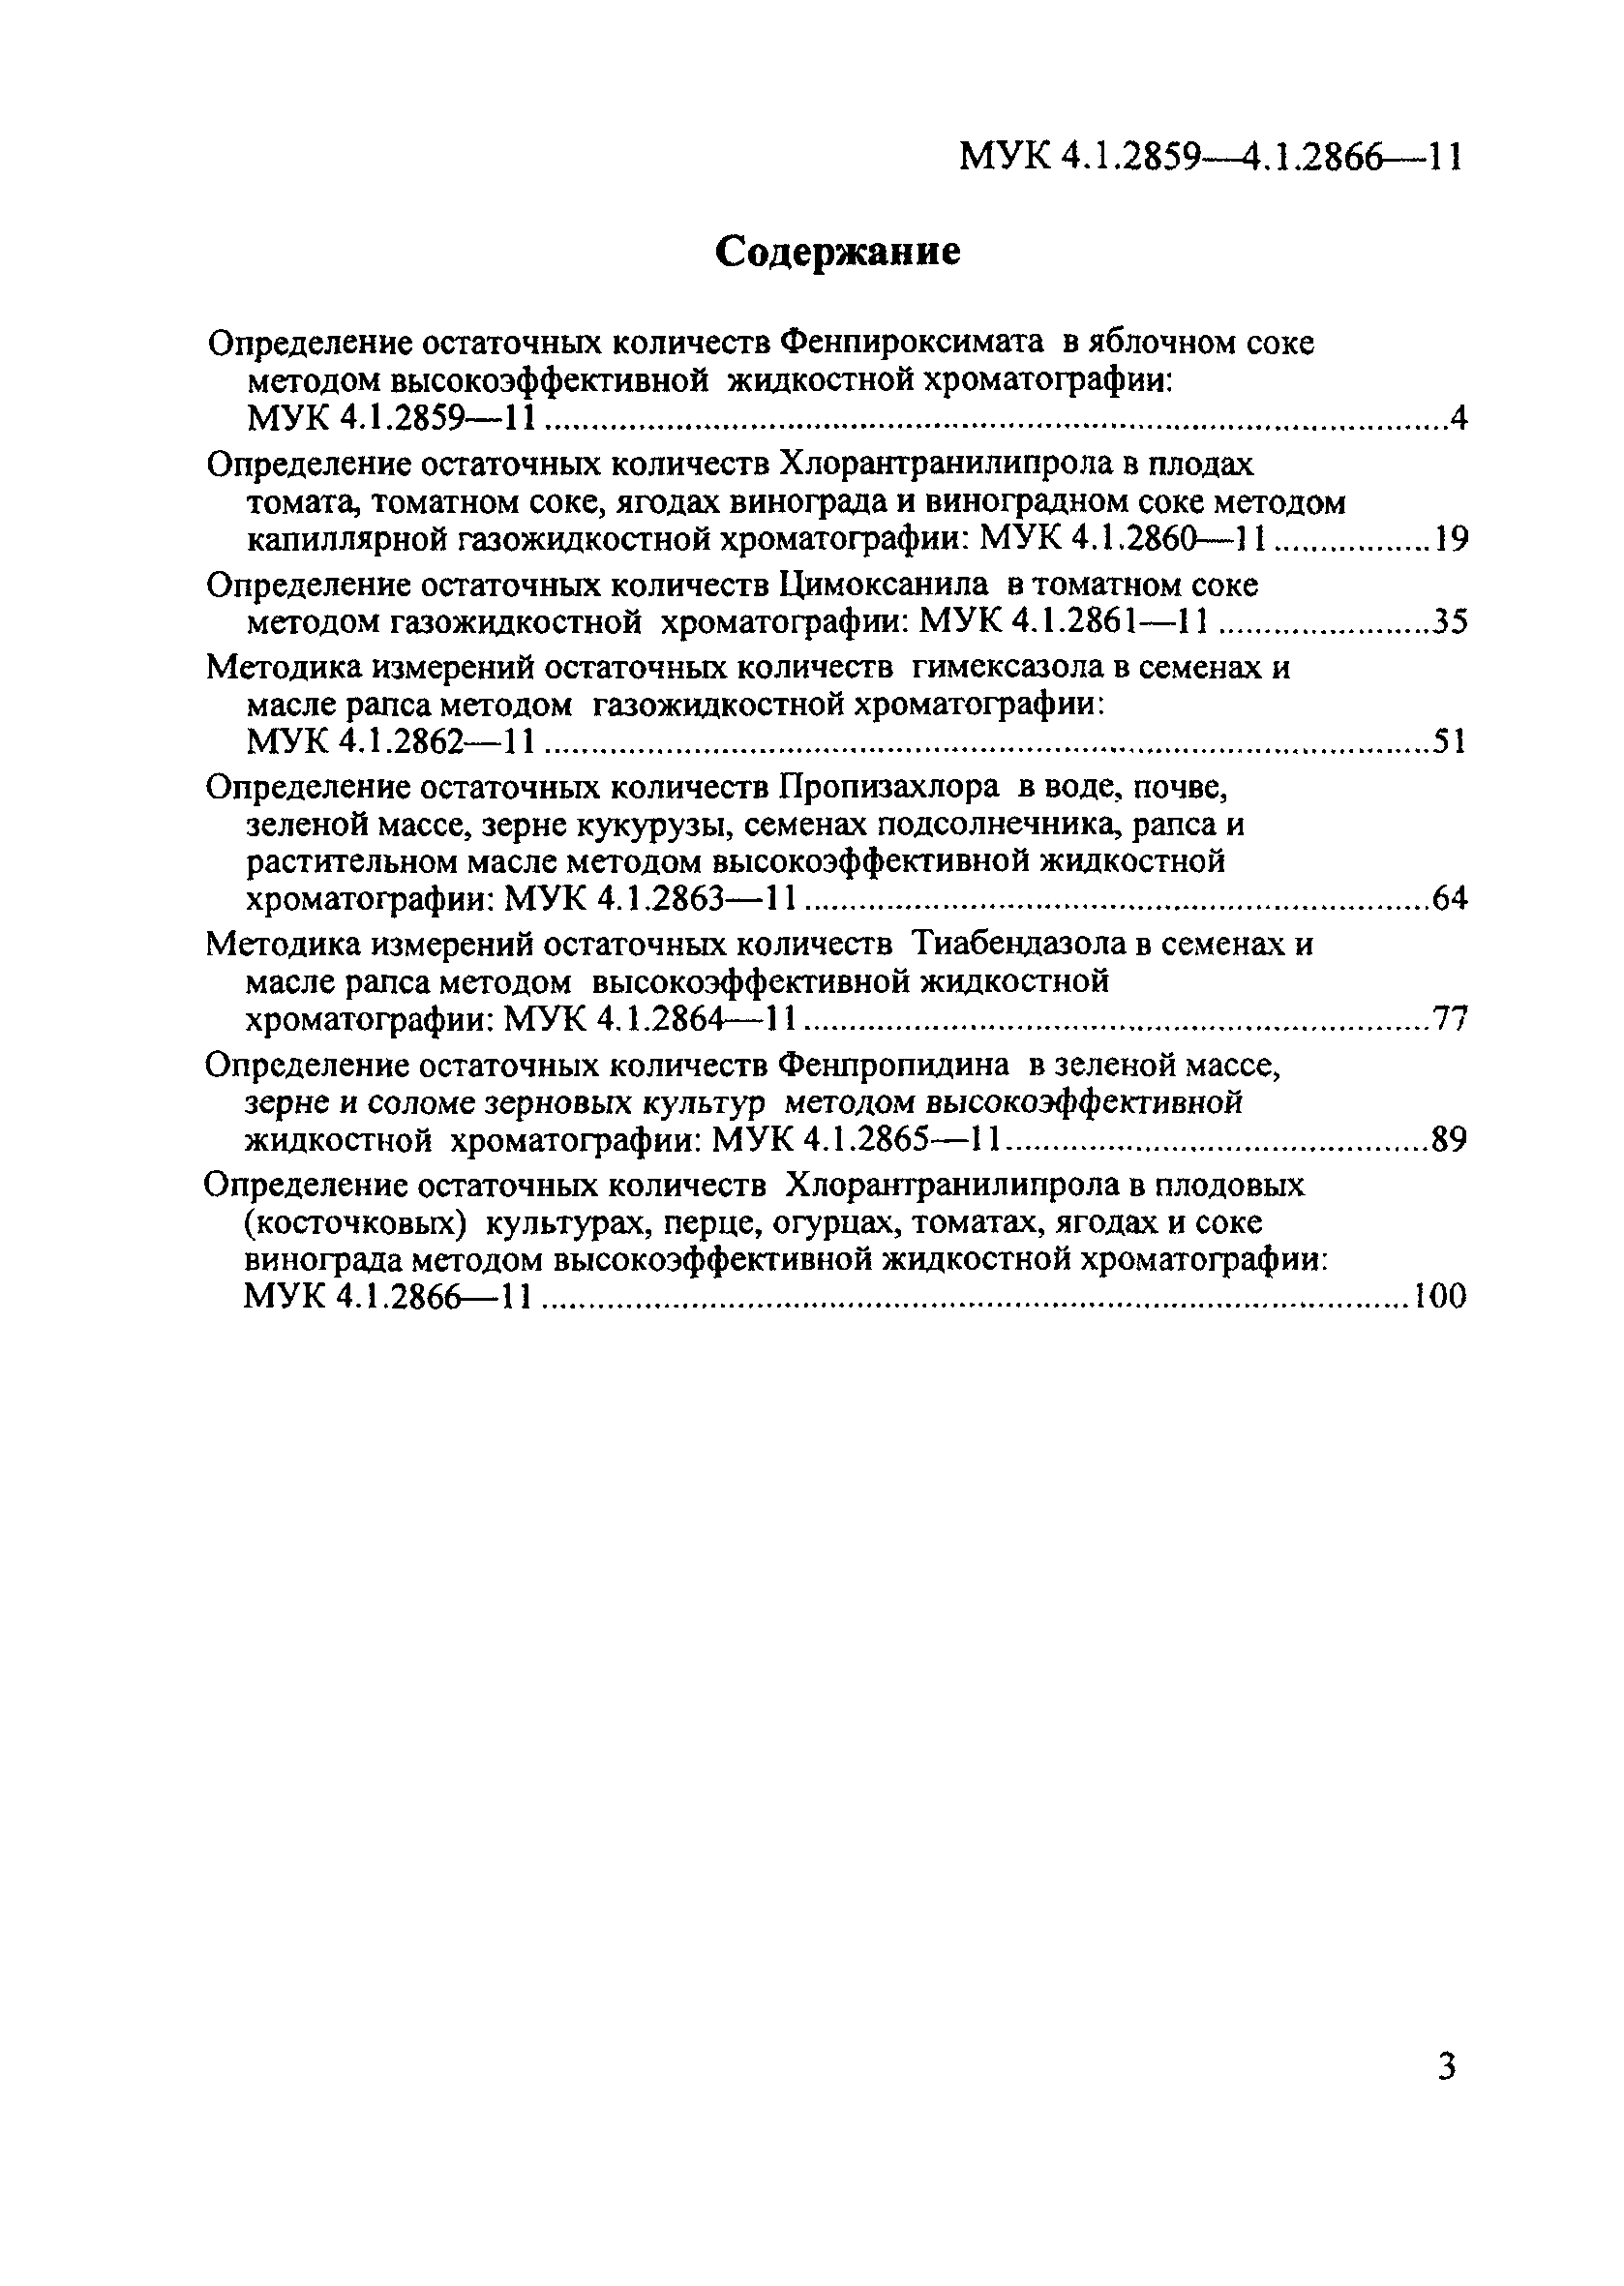 МУК 4.1.2860-11